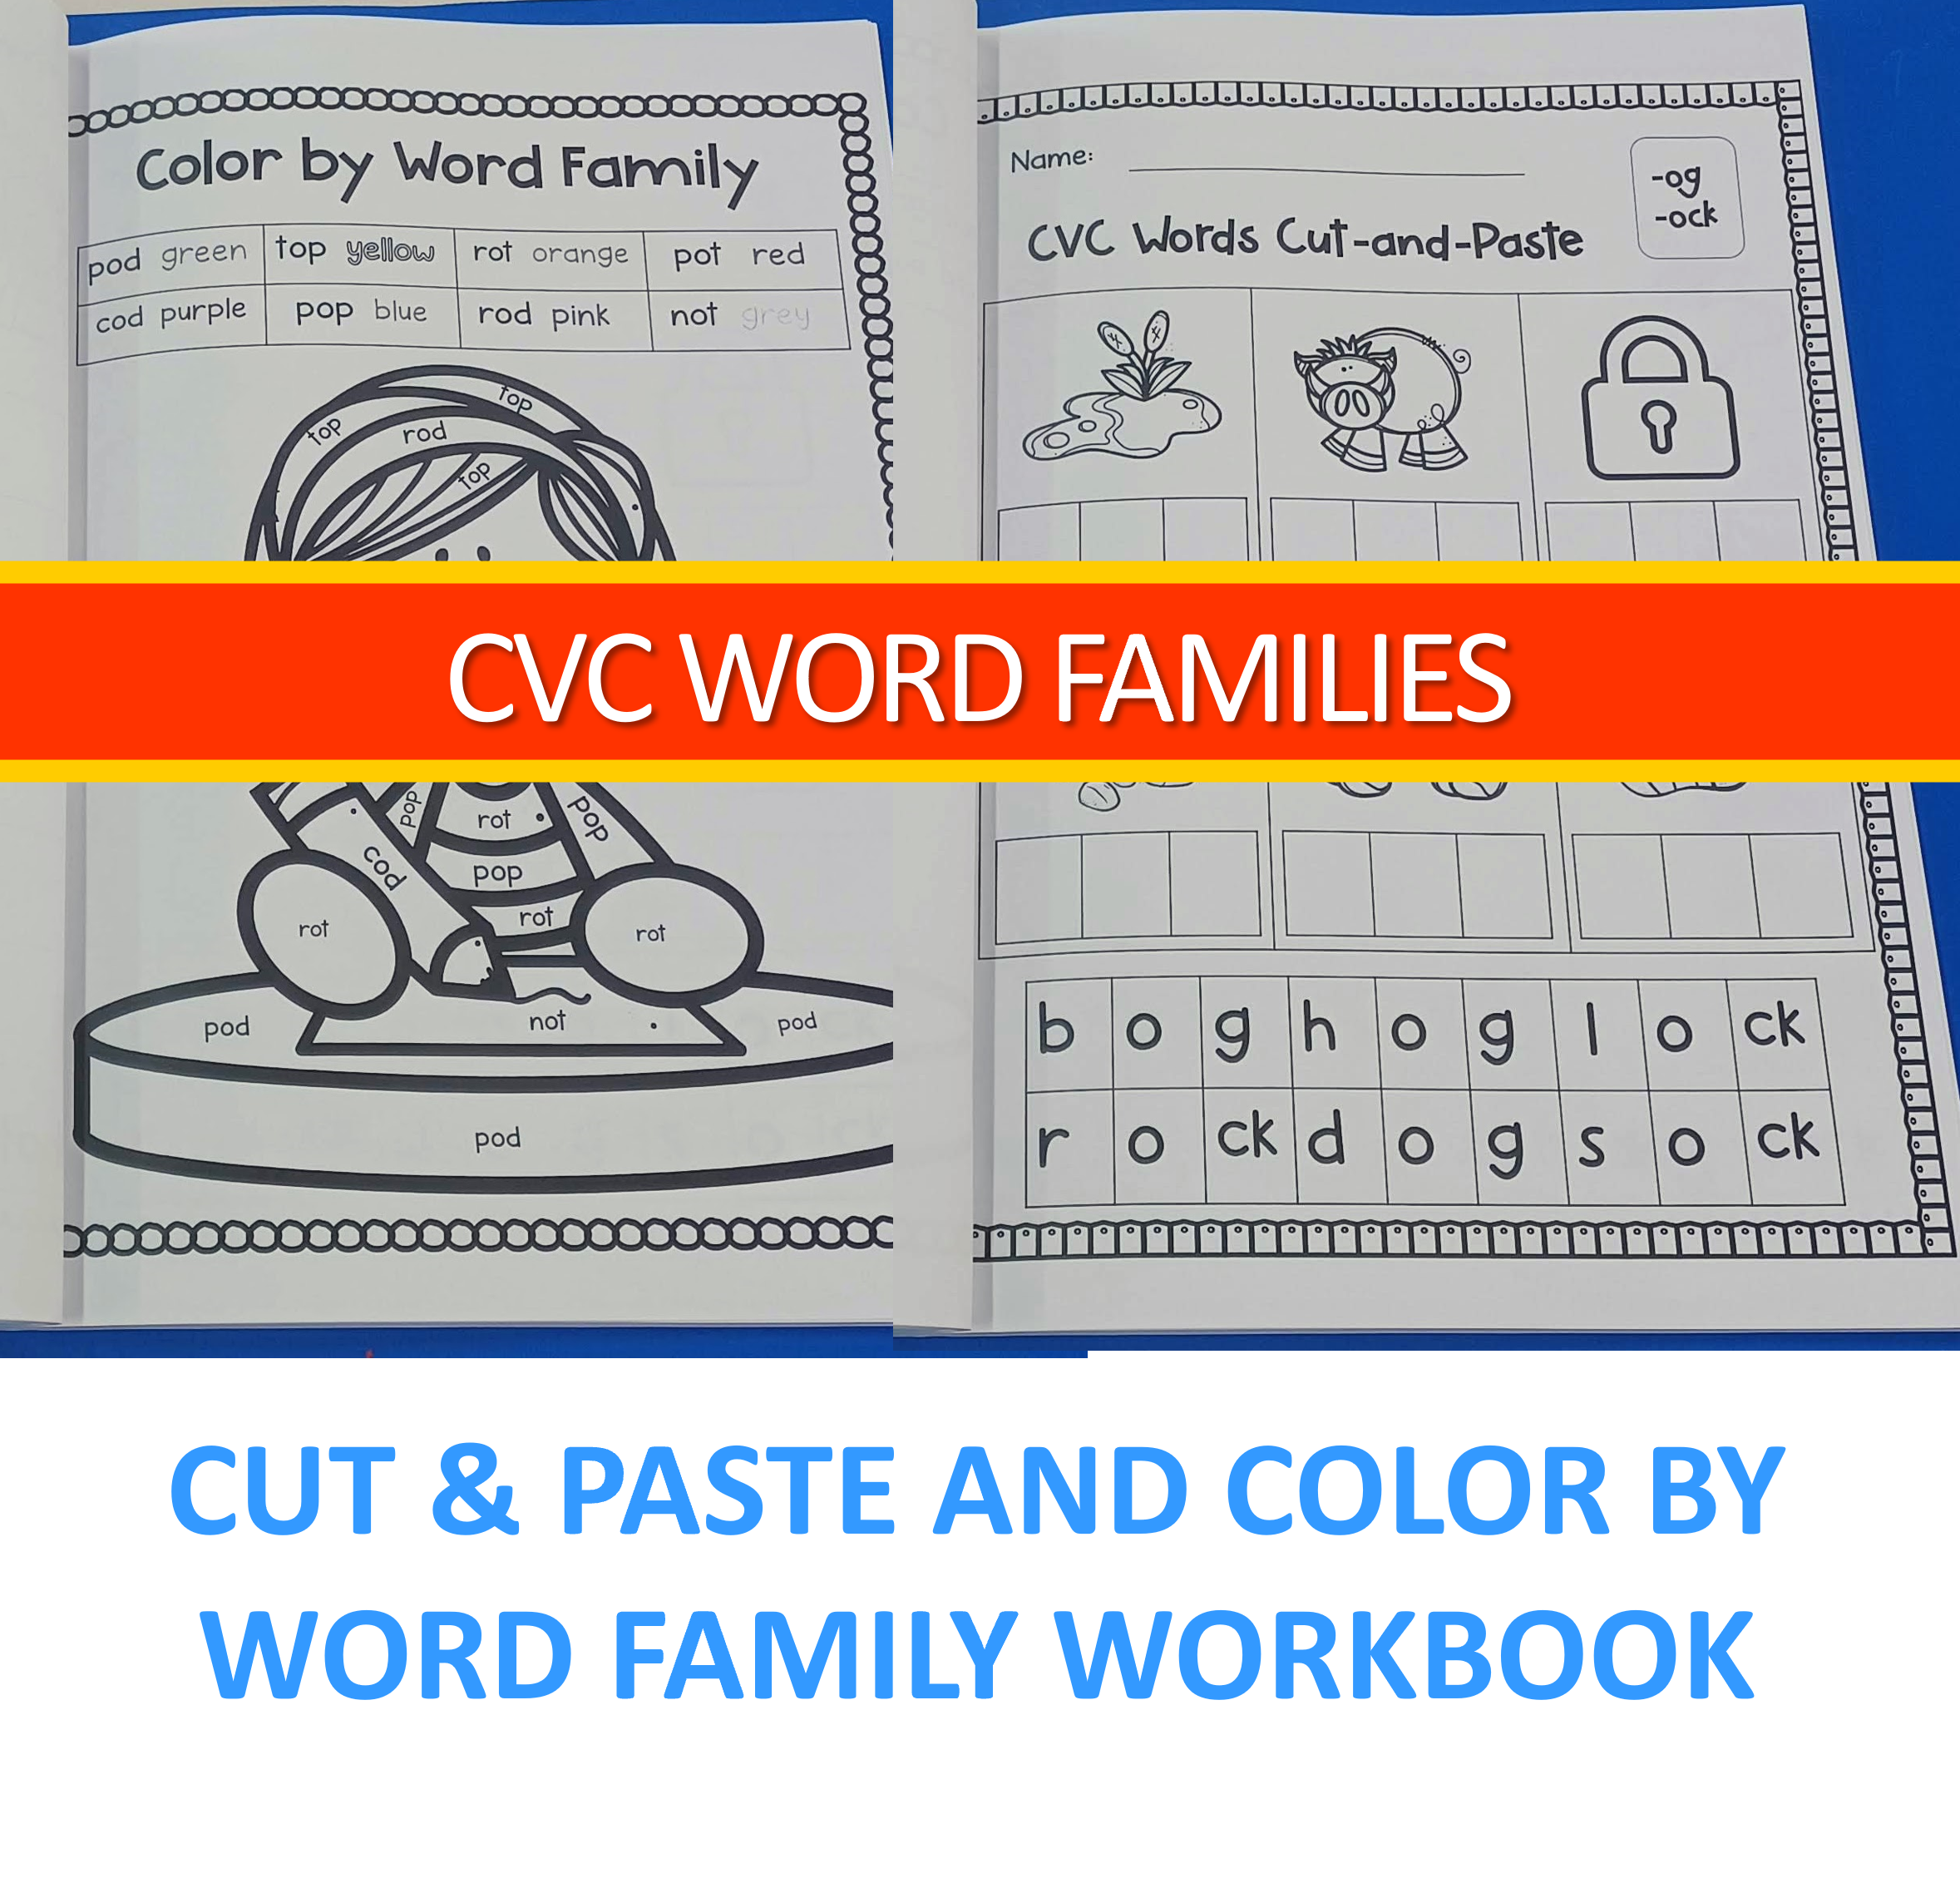 CVC Words Activities